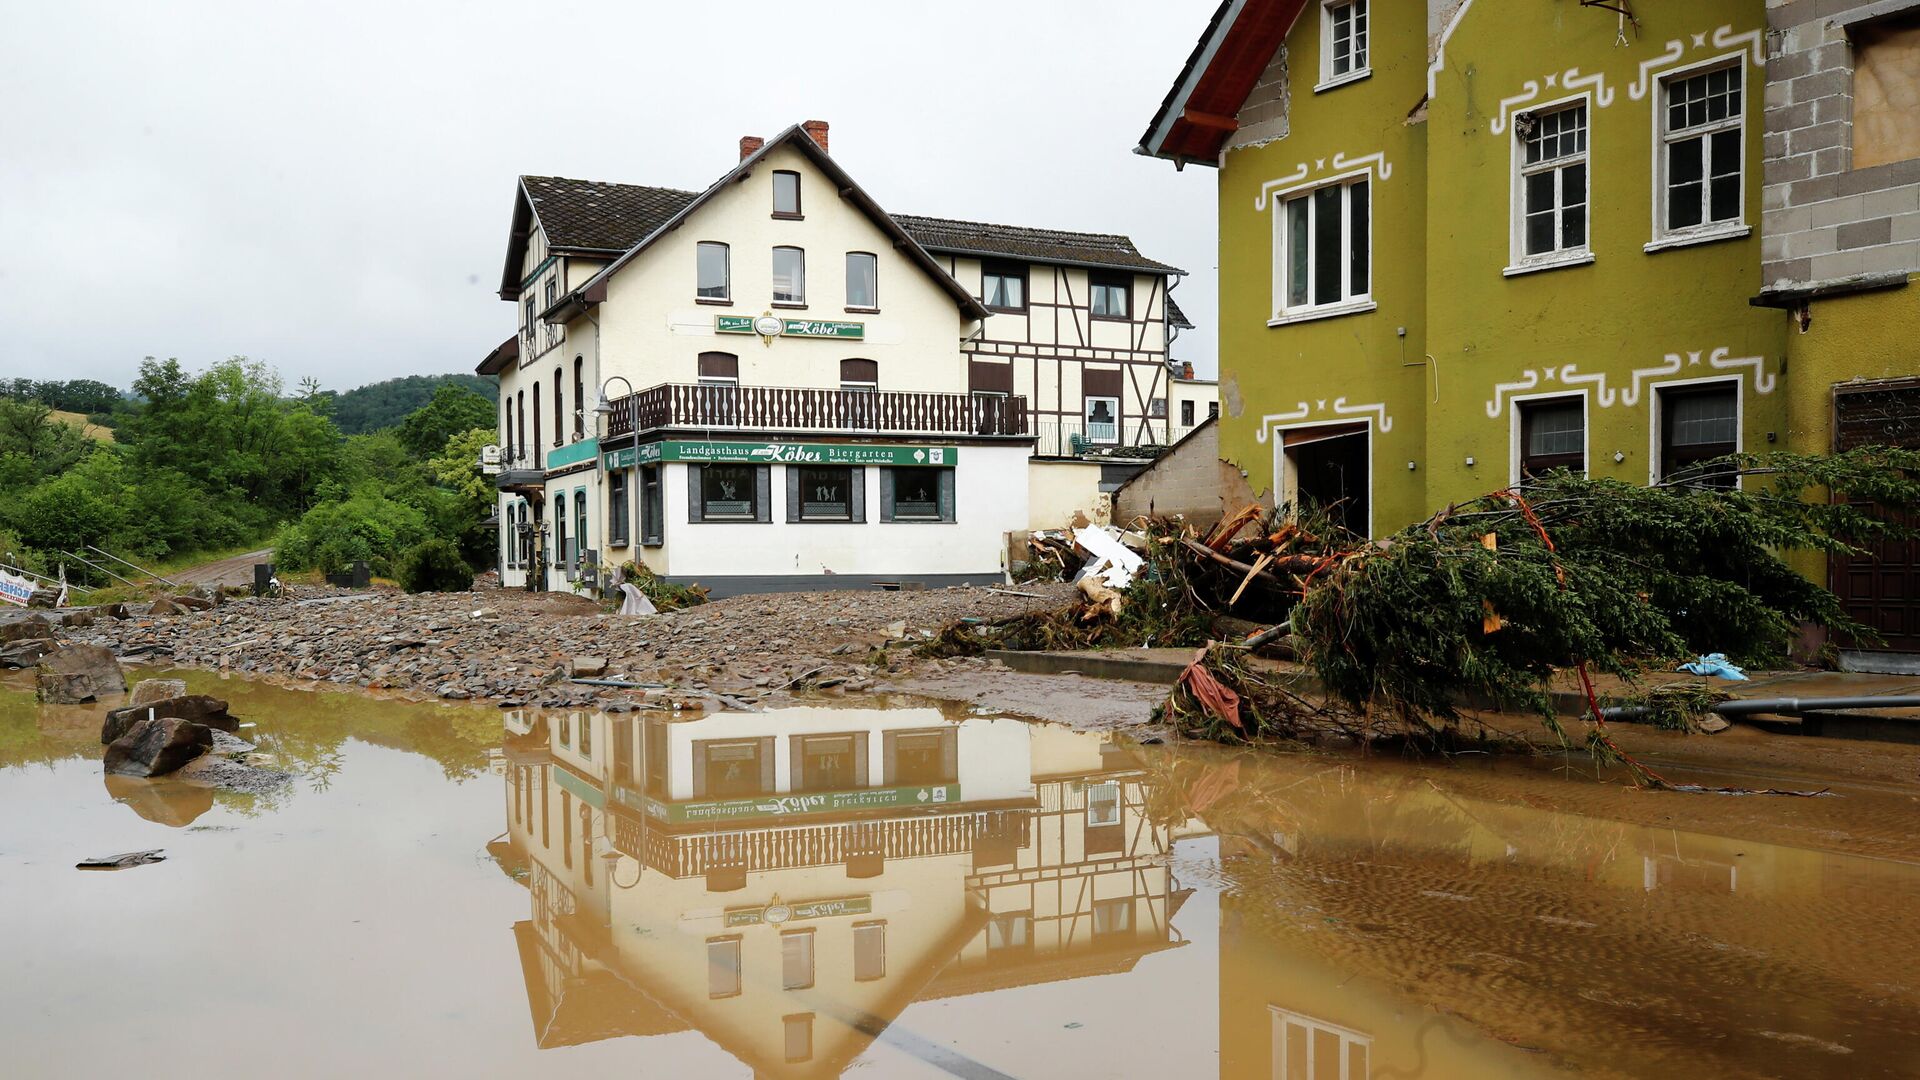 Общий вид зоны, пострадавшей от наводнения после проливных дождей в Шульде, Германия - РИА Новости, 1920, 16.07.2021